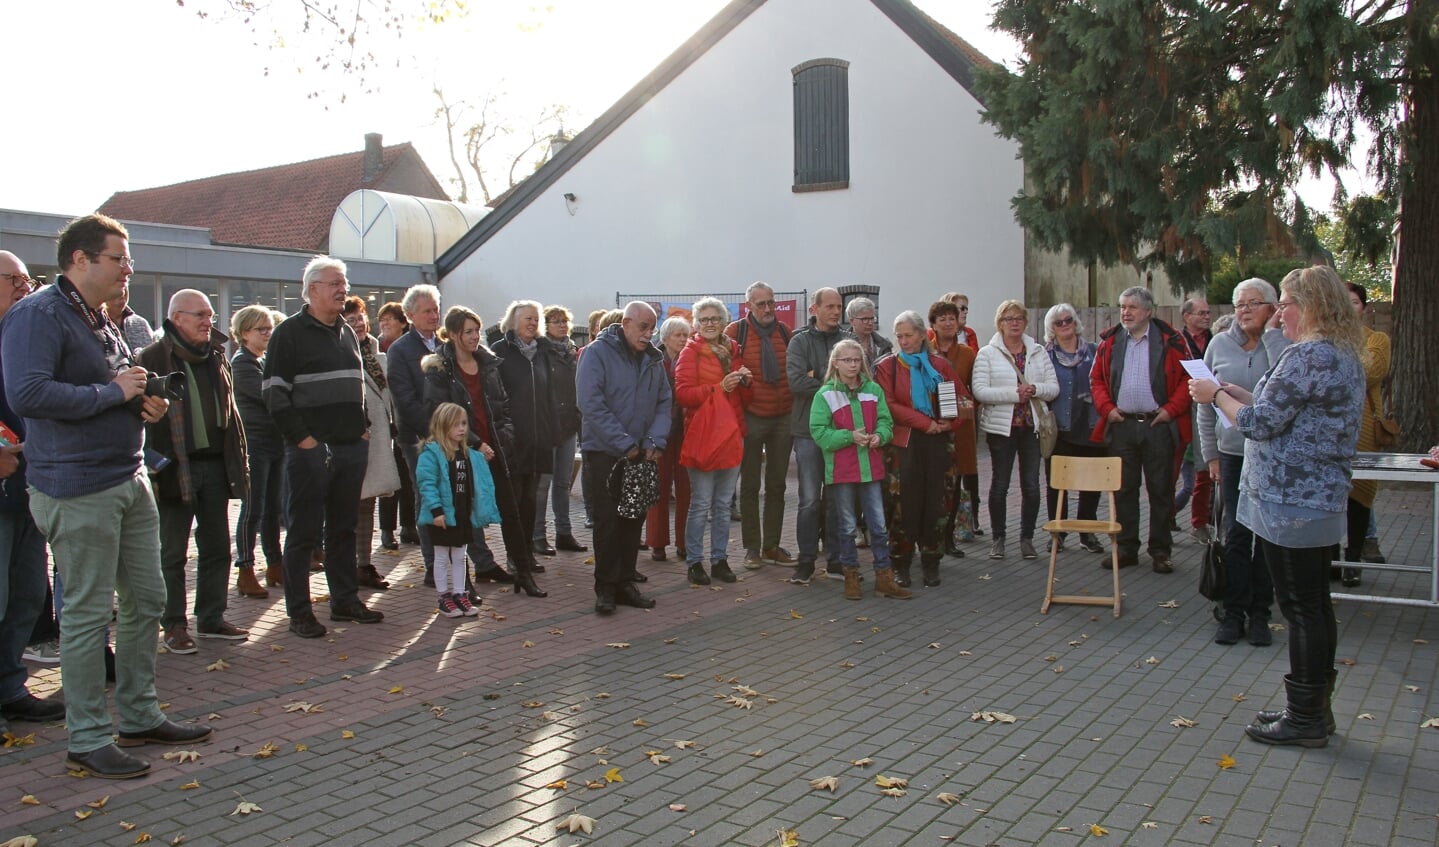 Opening Het Bloemenlokaal in Steenderen. Foto: Liesbeth Spaansen